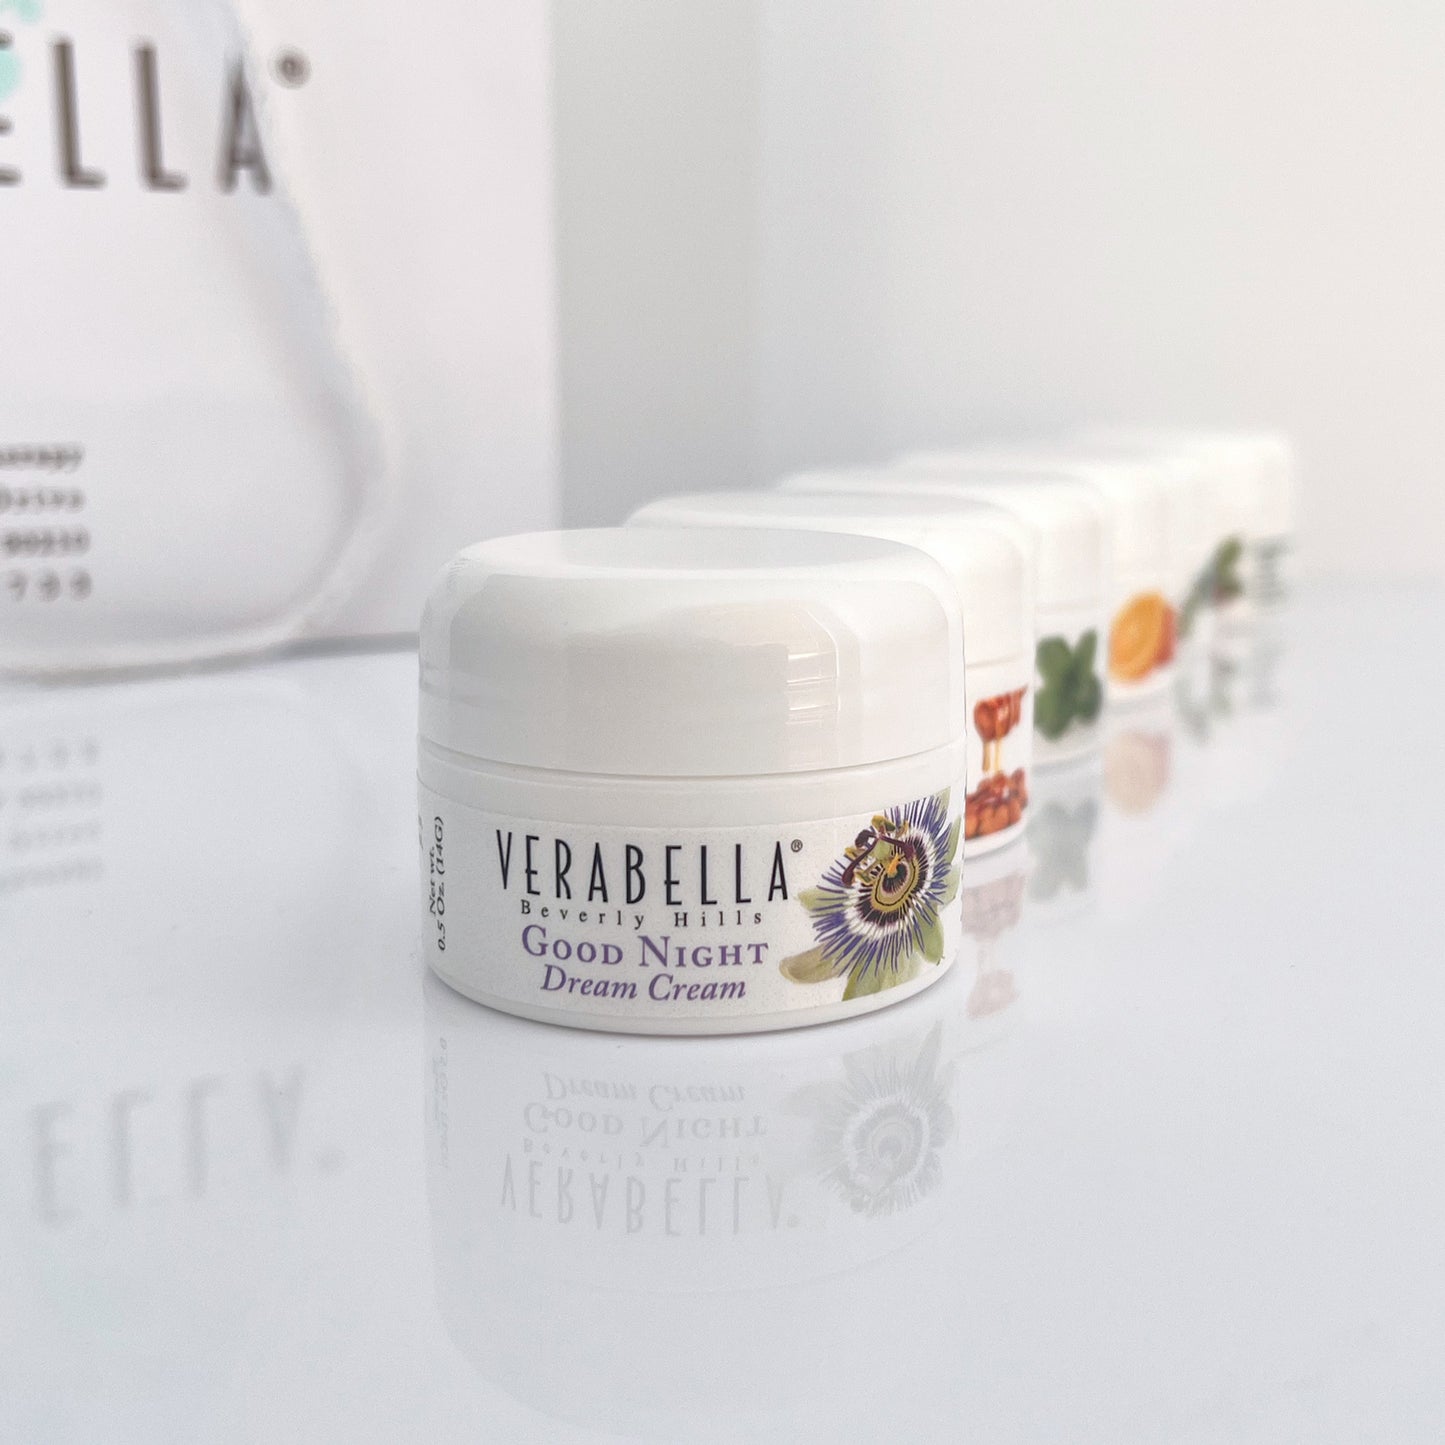 Verabella mini Good Night Dream Cream glycolic retinol moisturizer